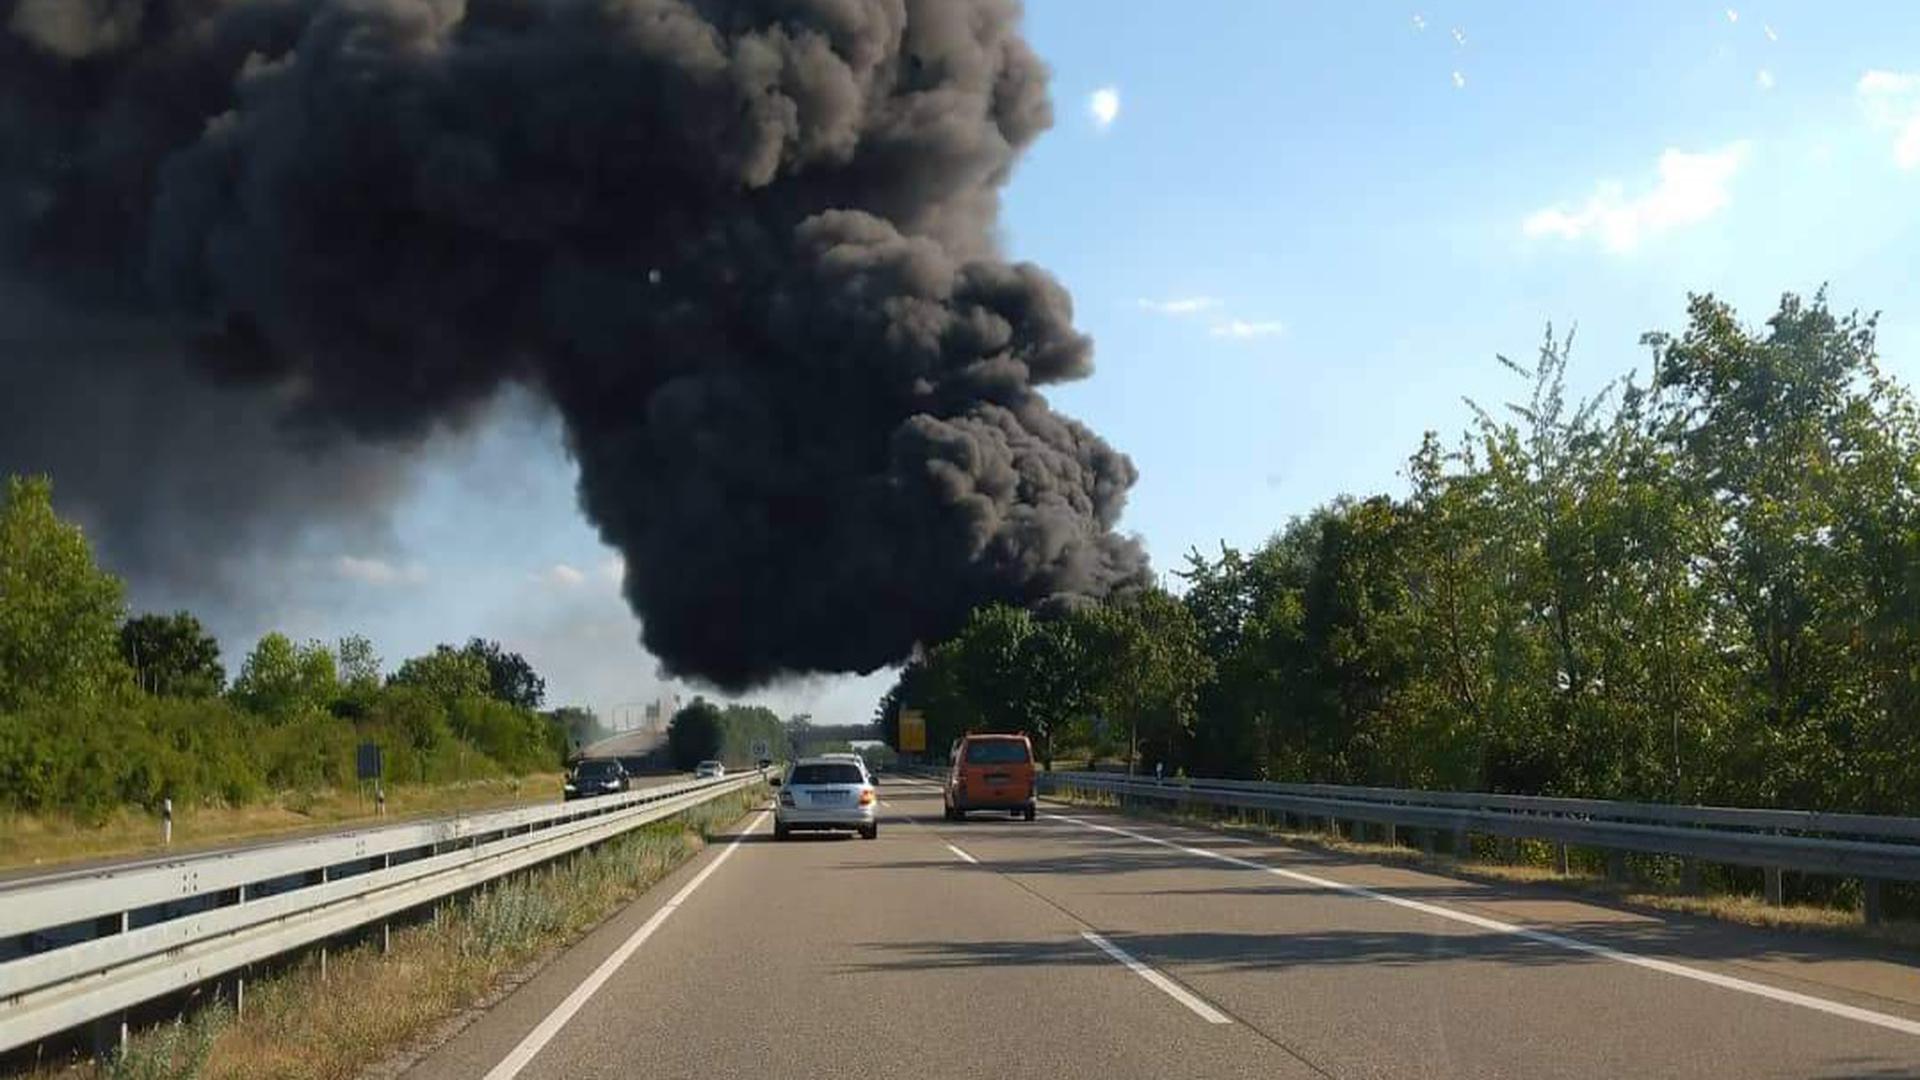 In einer Recyclingfirma in Hockenheim ist ein Feuer ausgebrochen. Riesige schwarze Rauchwolken zogen über die angrenzende B39. 